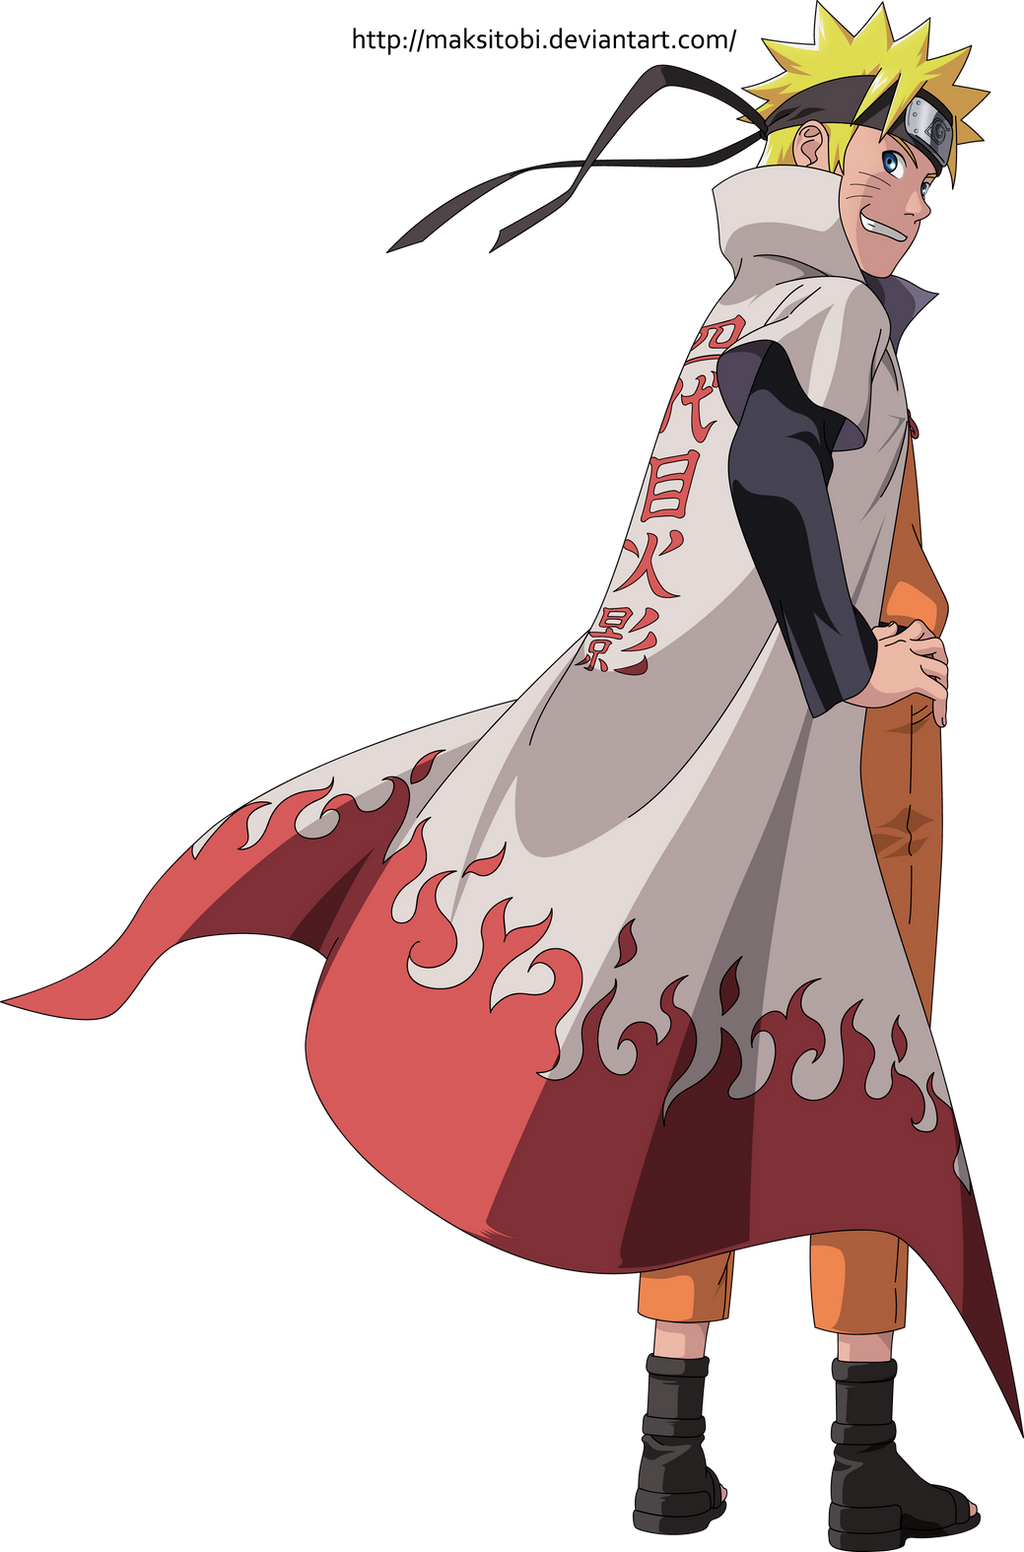 Hình nền  hình minh họa Anime hoạt hình Naruto Shippuuden Namikaze  Minato Hokage áp phích Tobirama Senju Hashirama Senju Hiruzen Sarutobi  1440x900  Gacuu  365825  Hình nền đẹp hd  WallHere